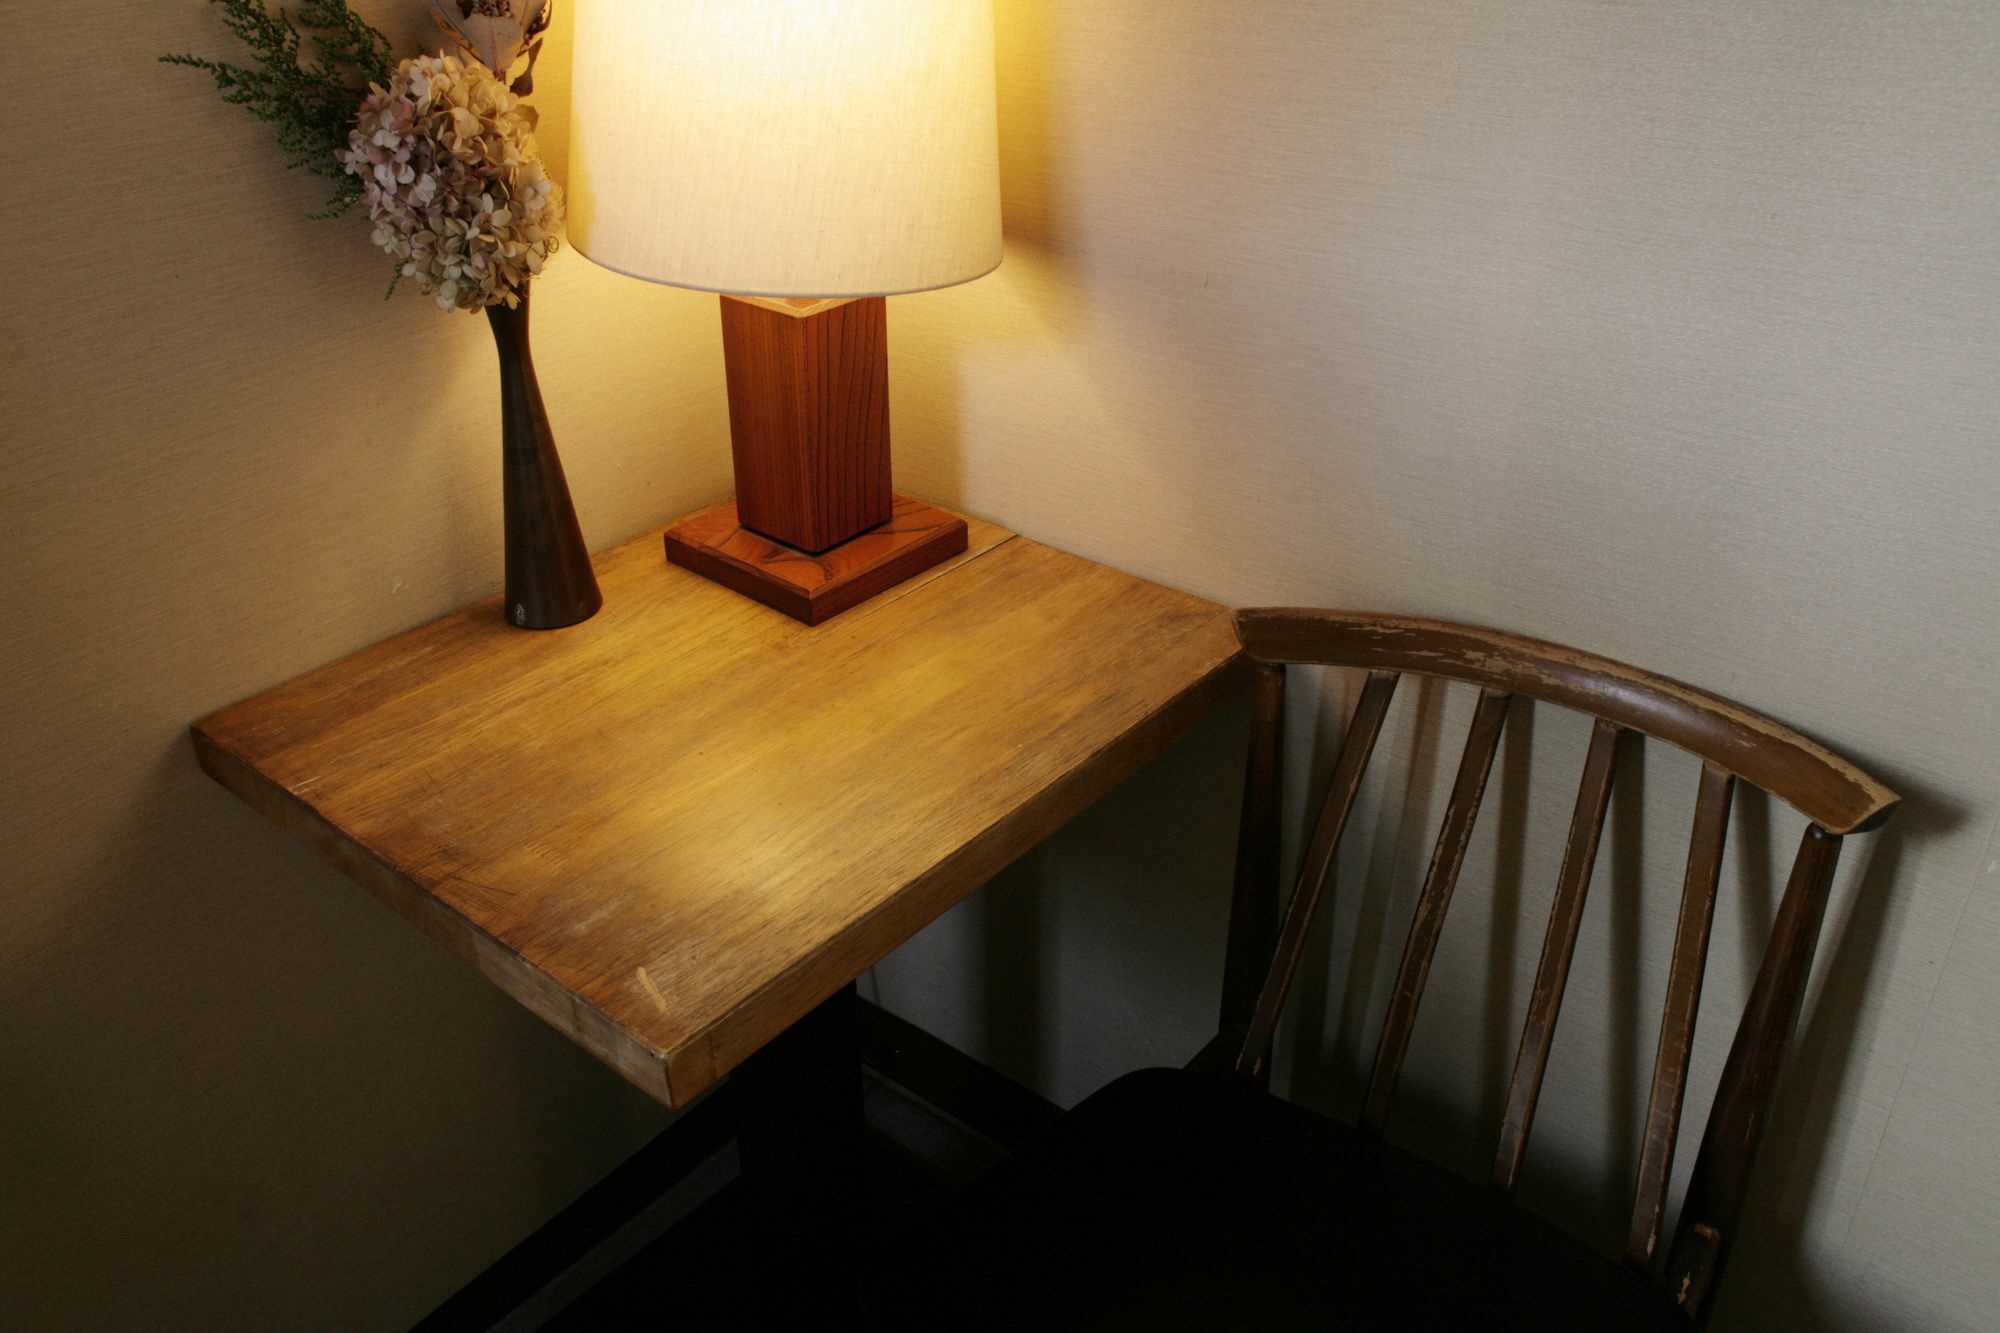 Gojo Guesthouse - Annex Kioto Zewnętrze zdjęcie